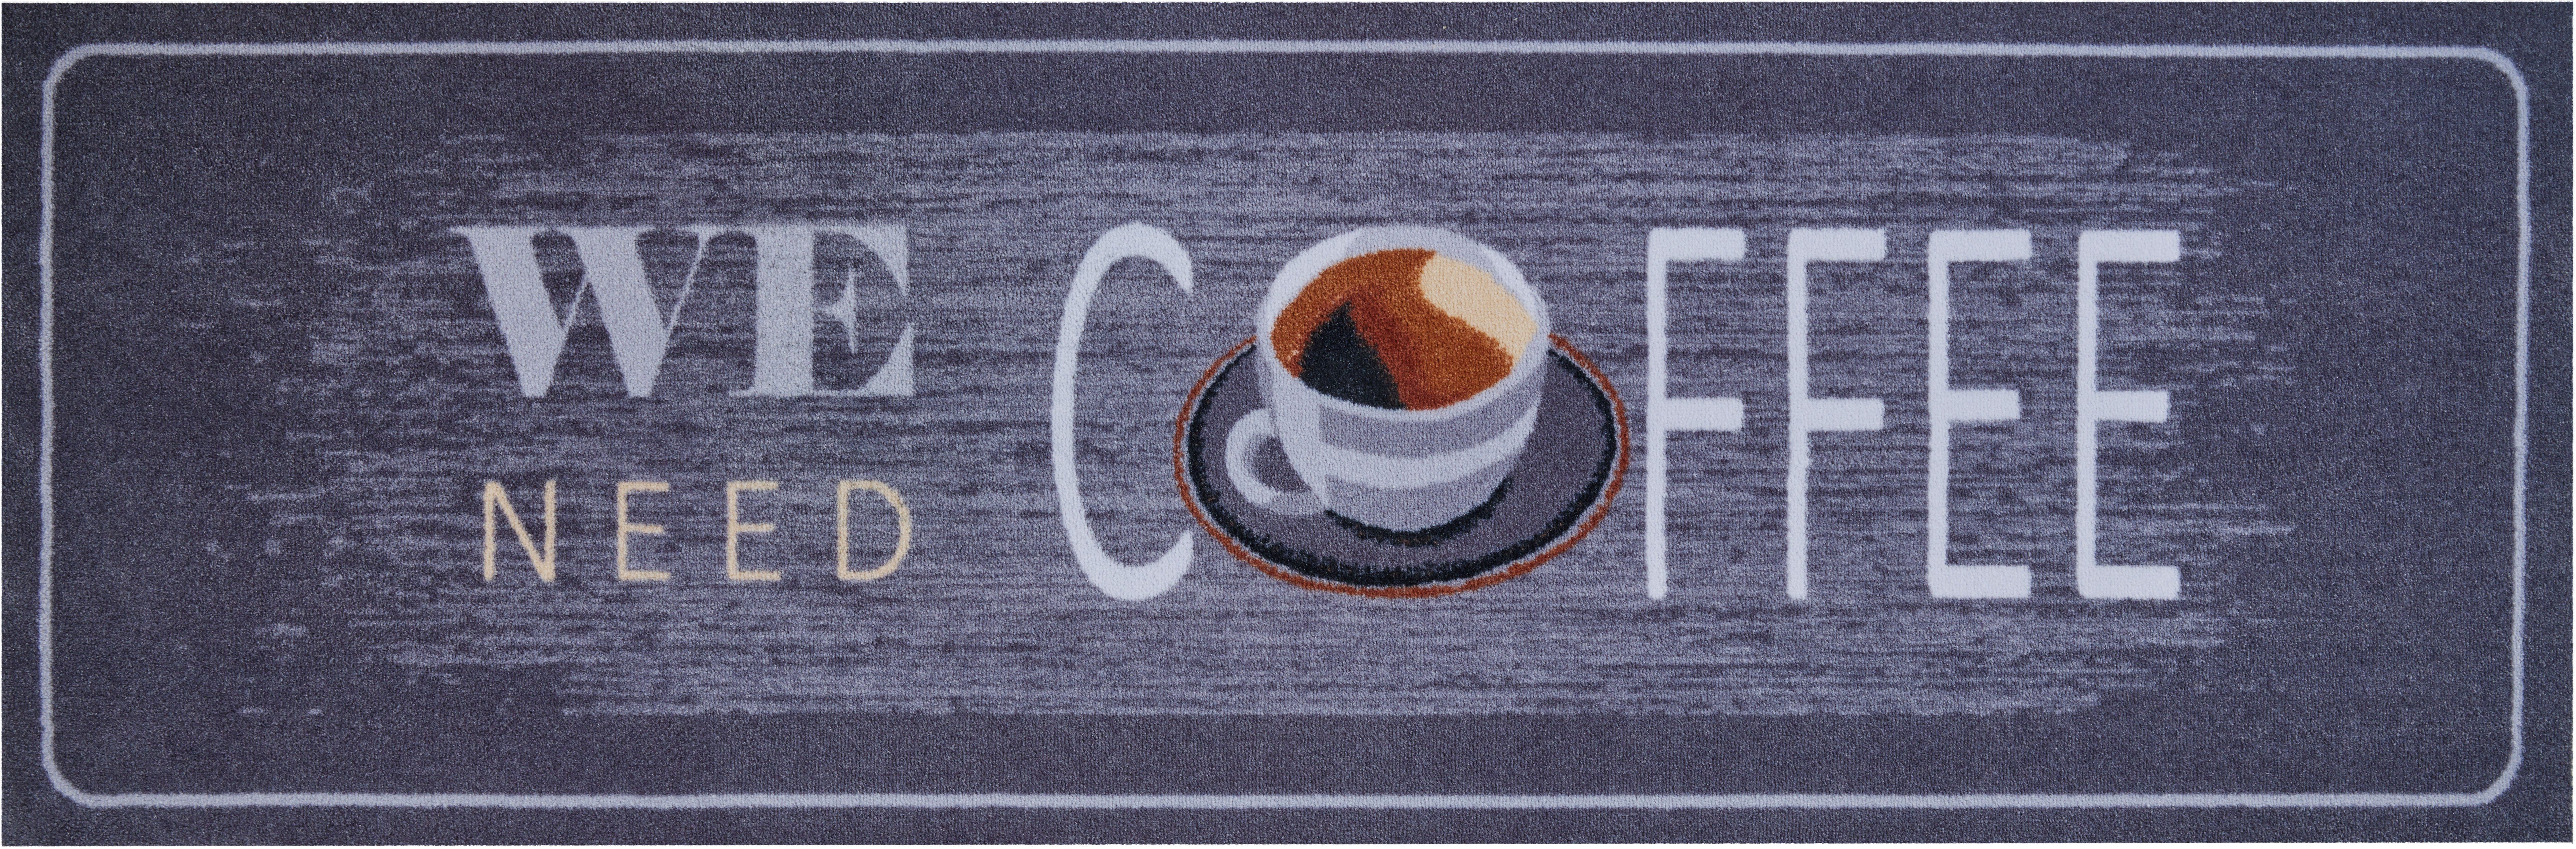 Küchenläufer Coffee, Grund, rechteckig, Höhe: 8 mm, In- und Outdoor geeignet